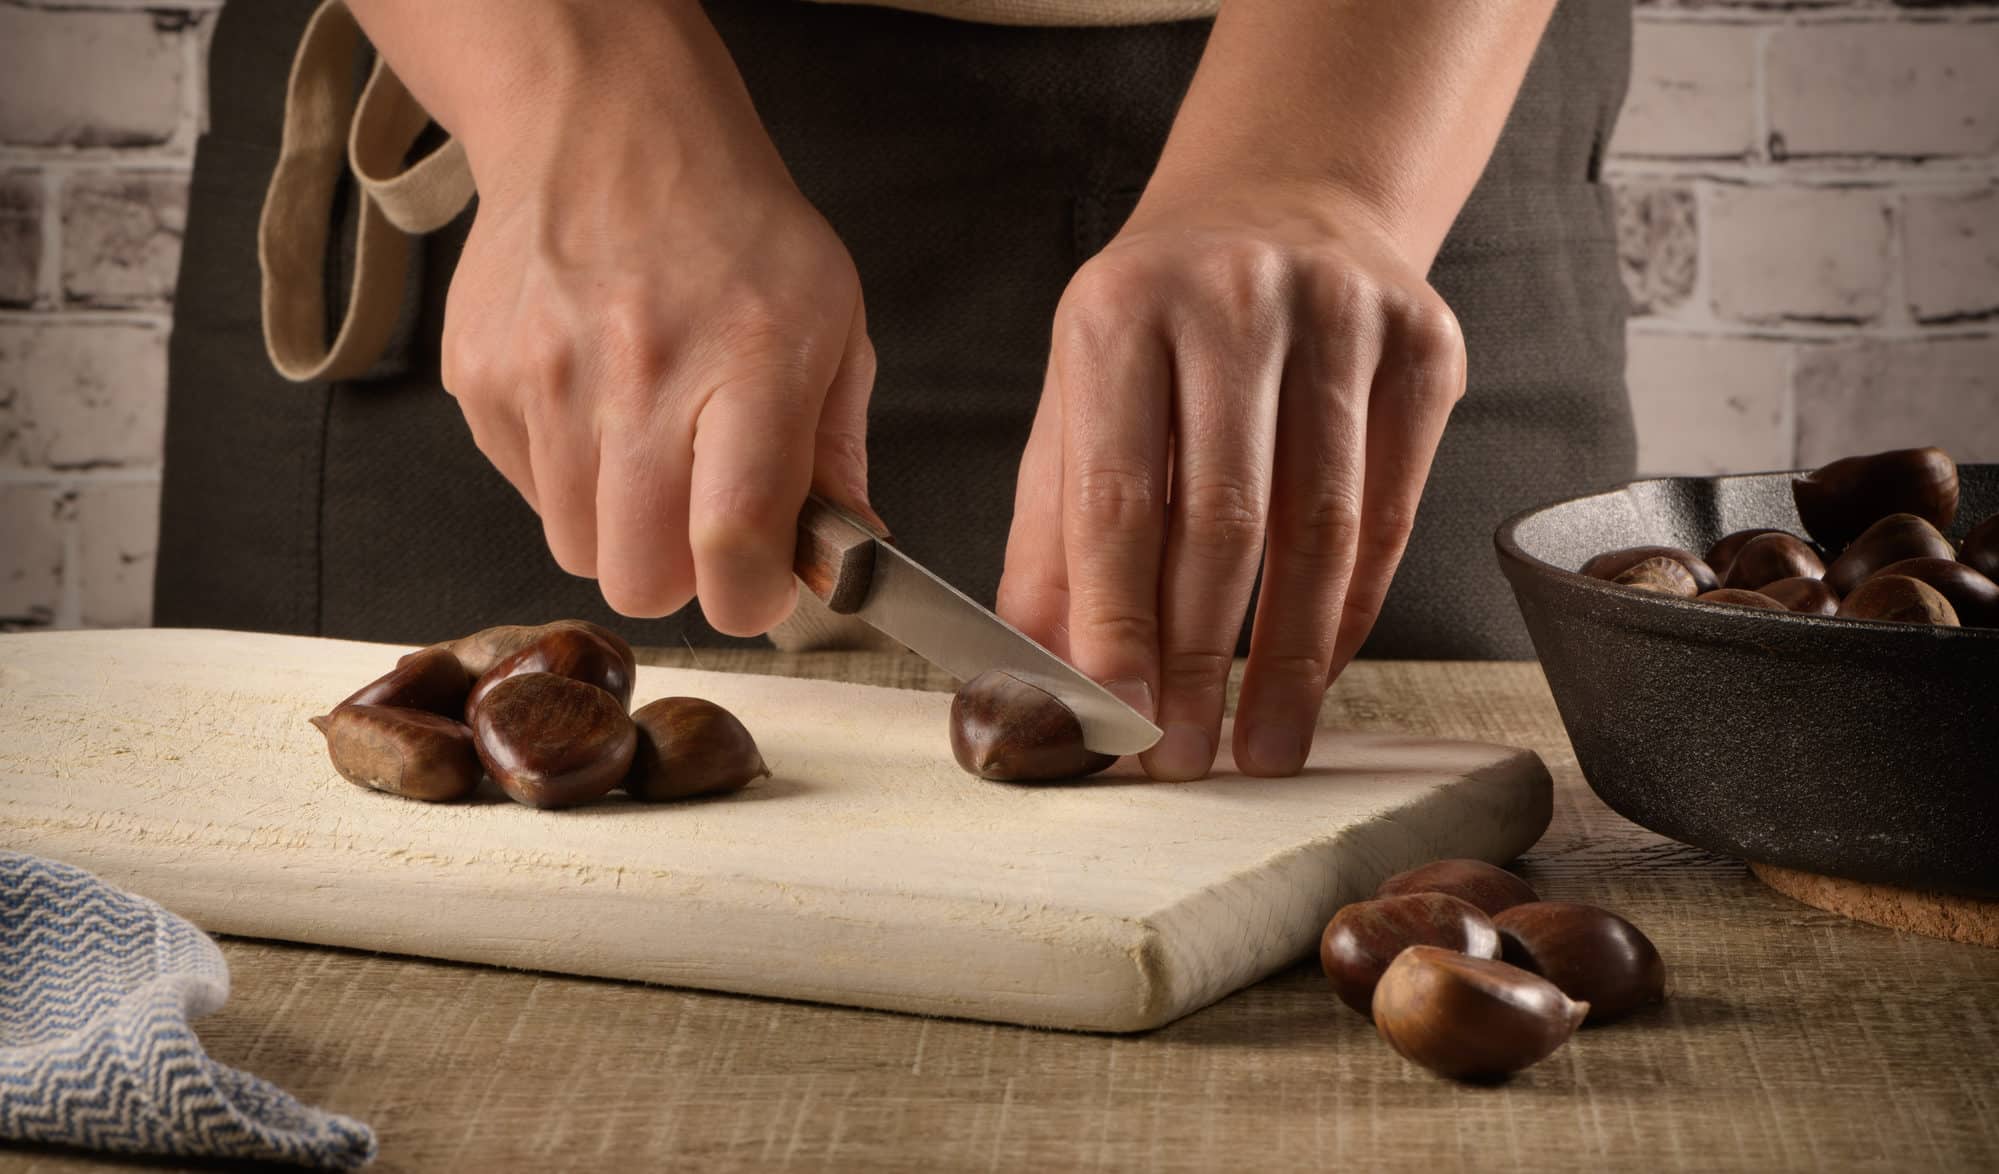 Woman cuts chestnuts